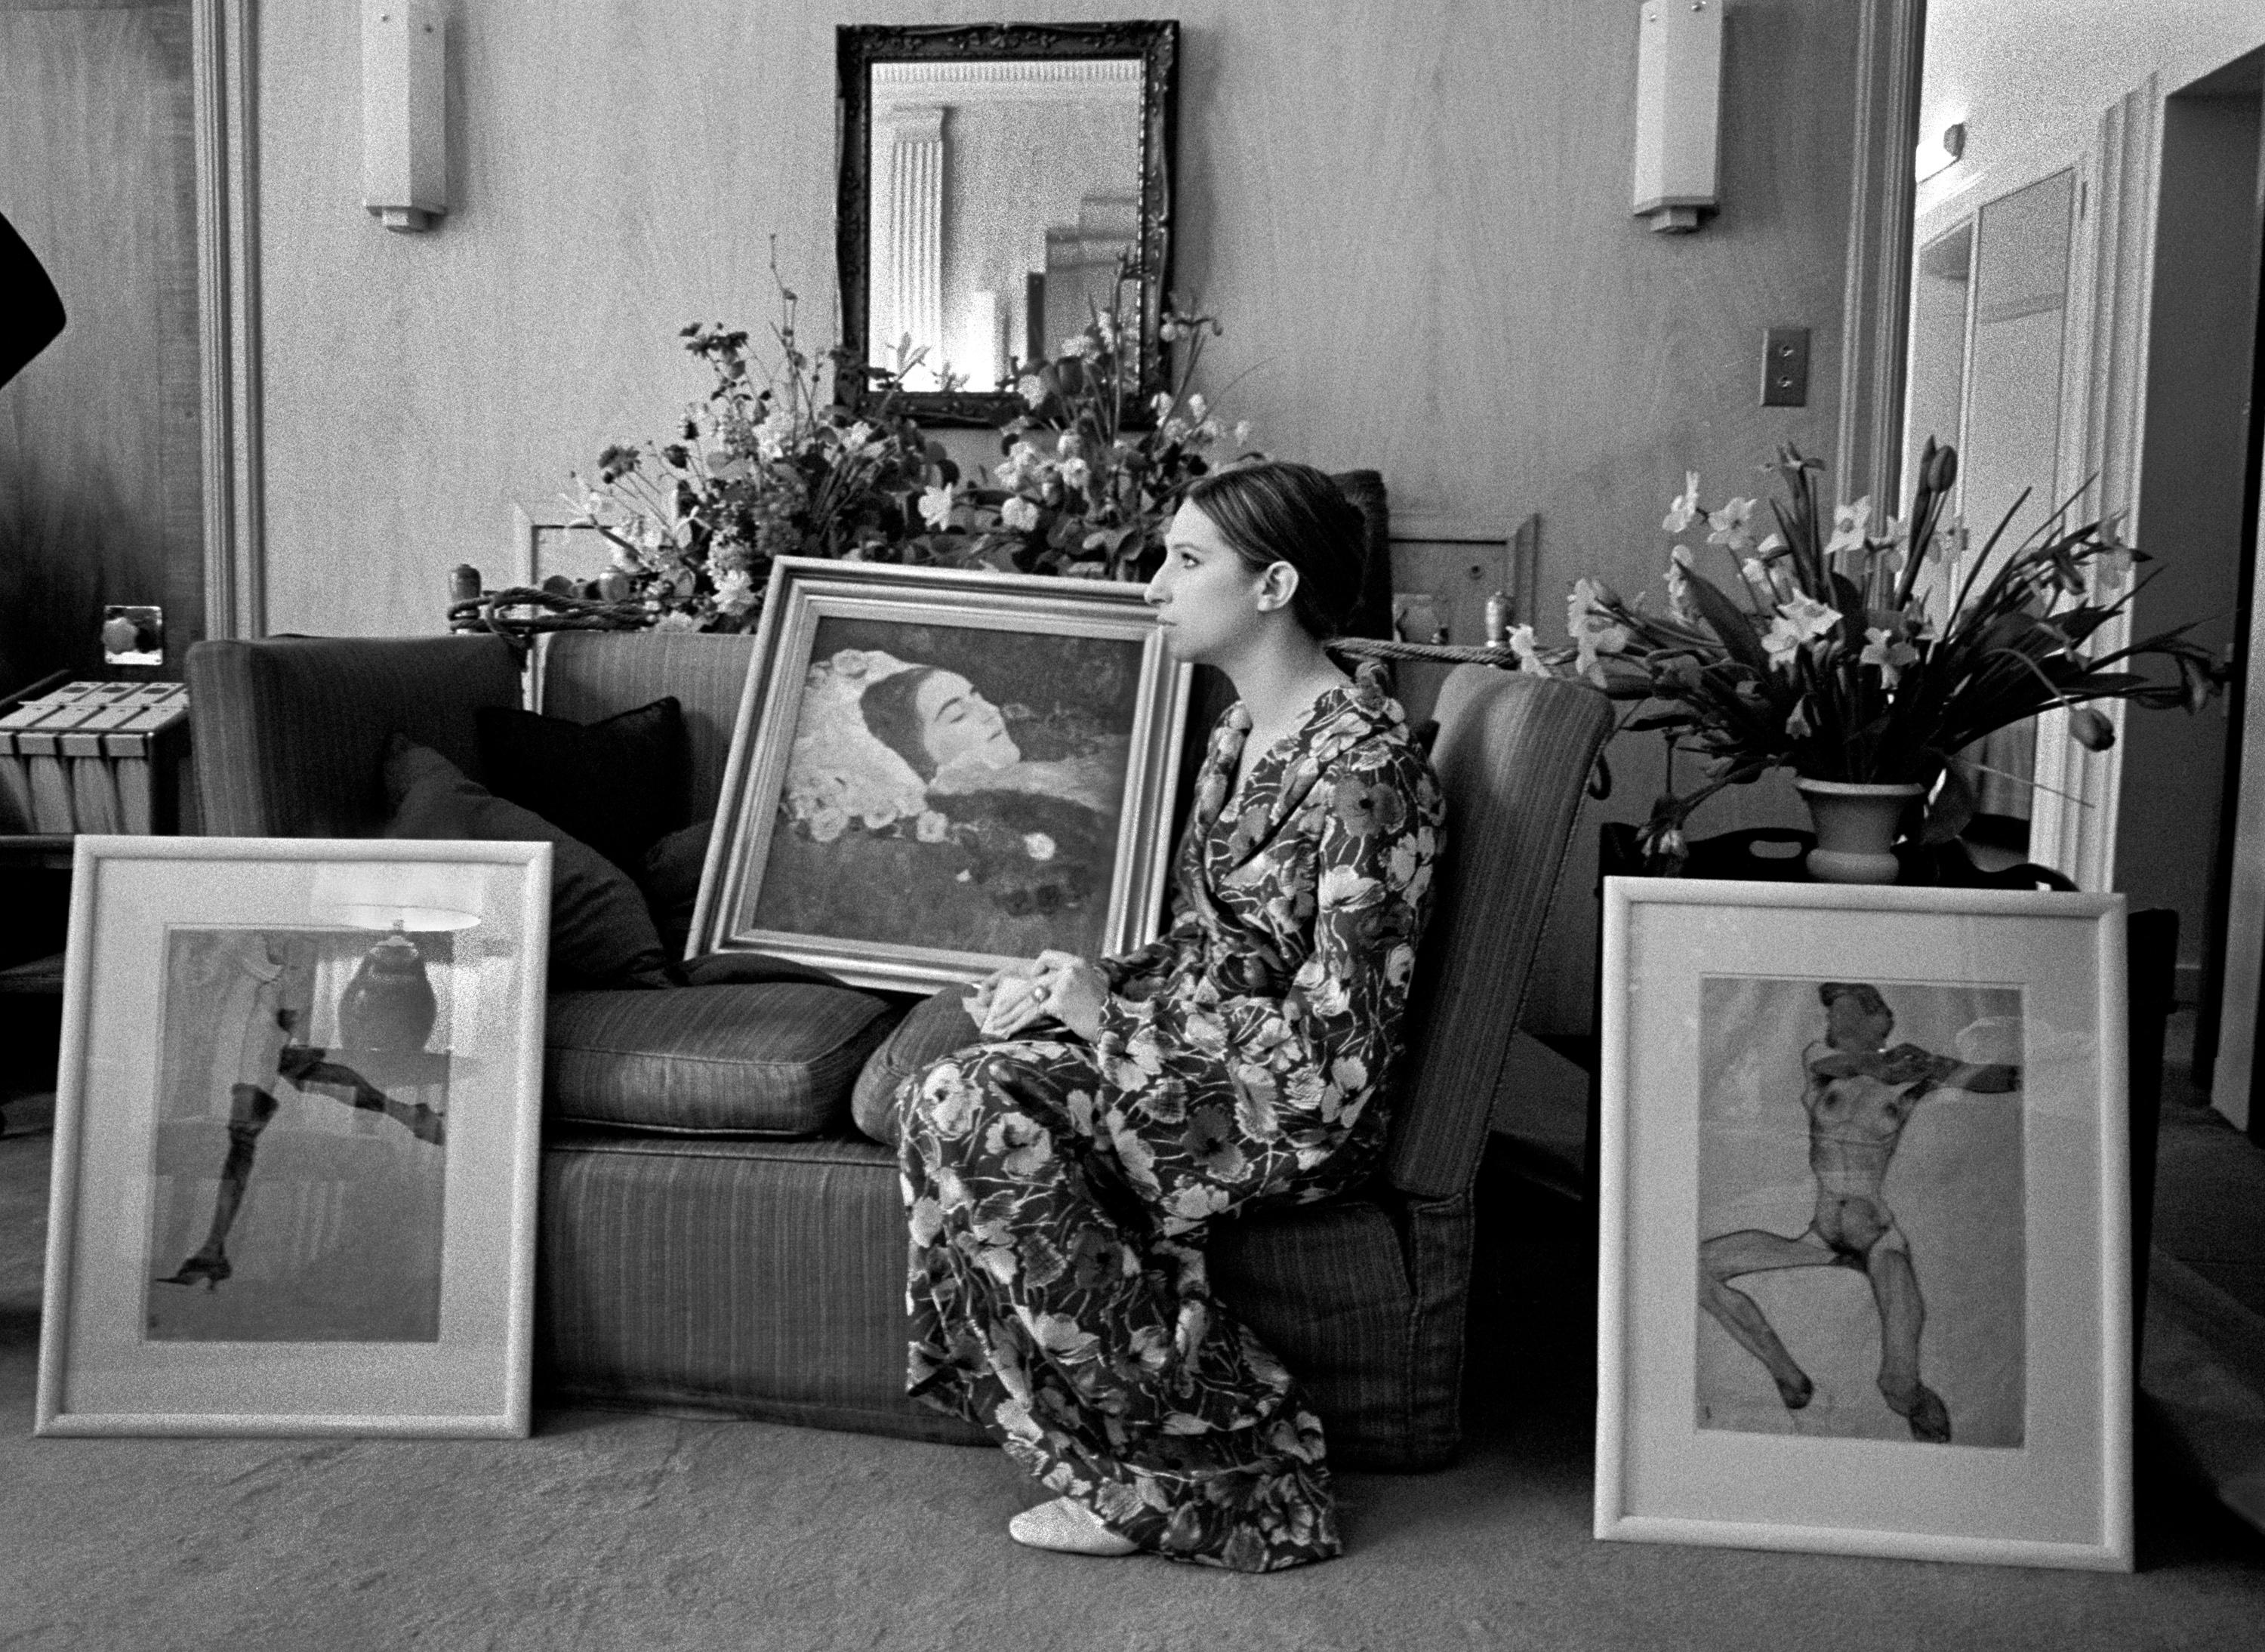 Barbara Streisand, 1969", del fotógrafo estadounidense Lawrence Schiller. Pigmento digital, Ed. 10/35. Imagen: 13,75 x 19 pulg. / Papel: 16 x 20 pulg. Esta fotografía en blanco y negro muestra un perfil lateral de Barbara Streisand sentada junto a